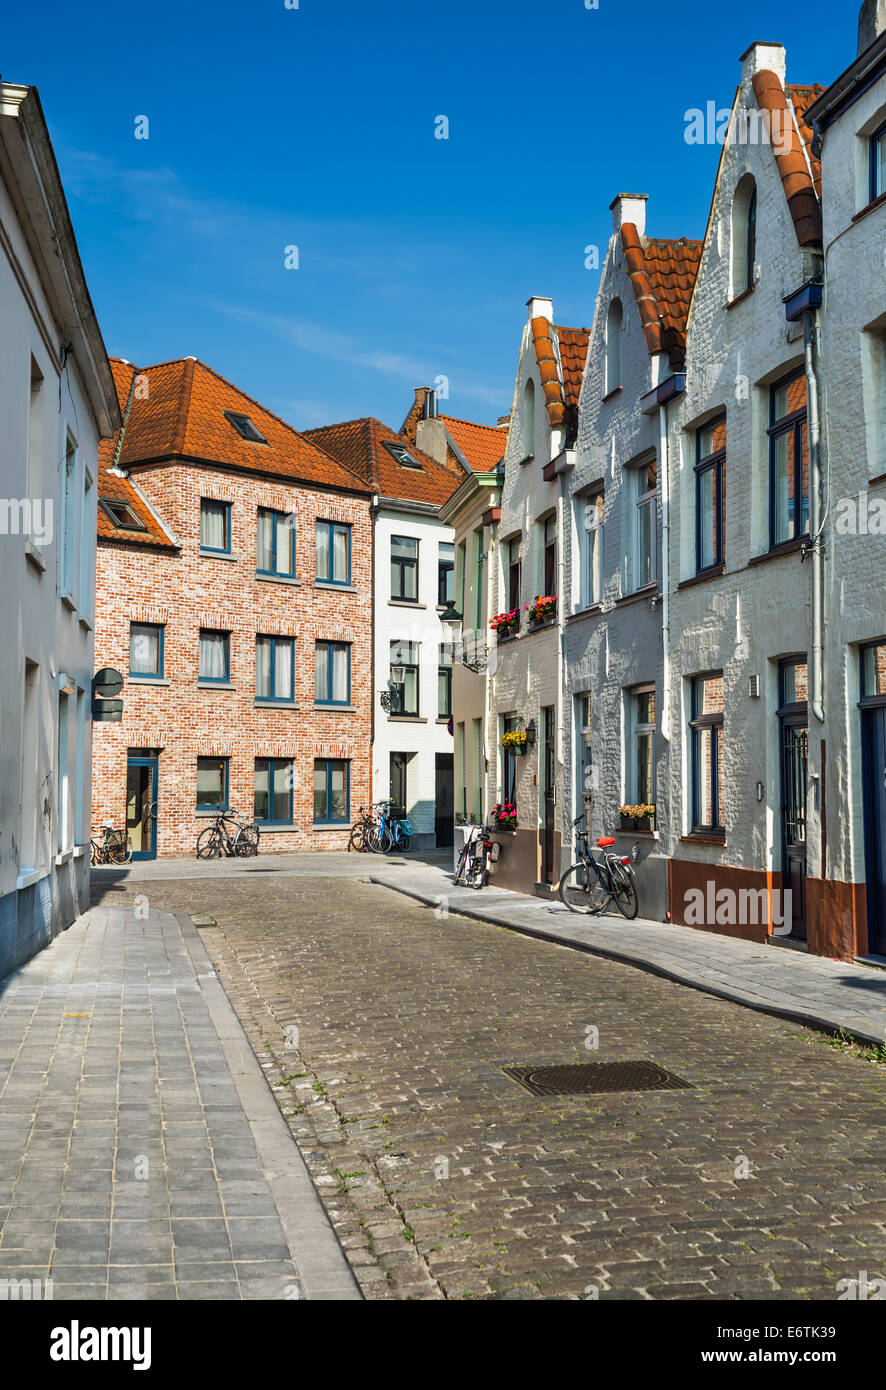 Mittelalterlichen Kulisse mit gepflasterten Straße und Belgien Architektur Häuser in Brügge, Wahrzeichen von Flandern. Stockfoto